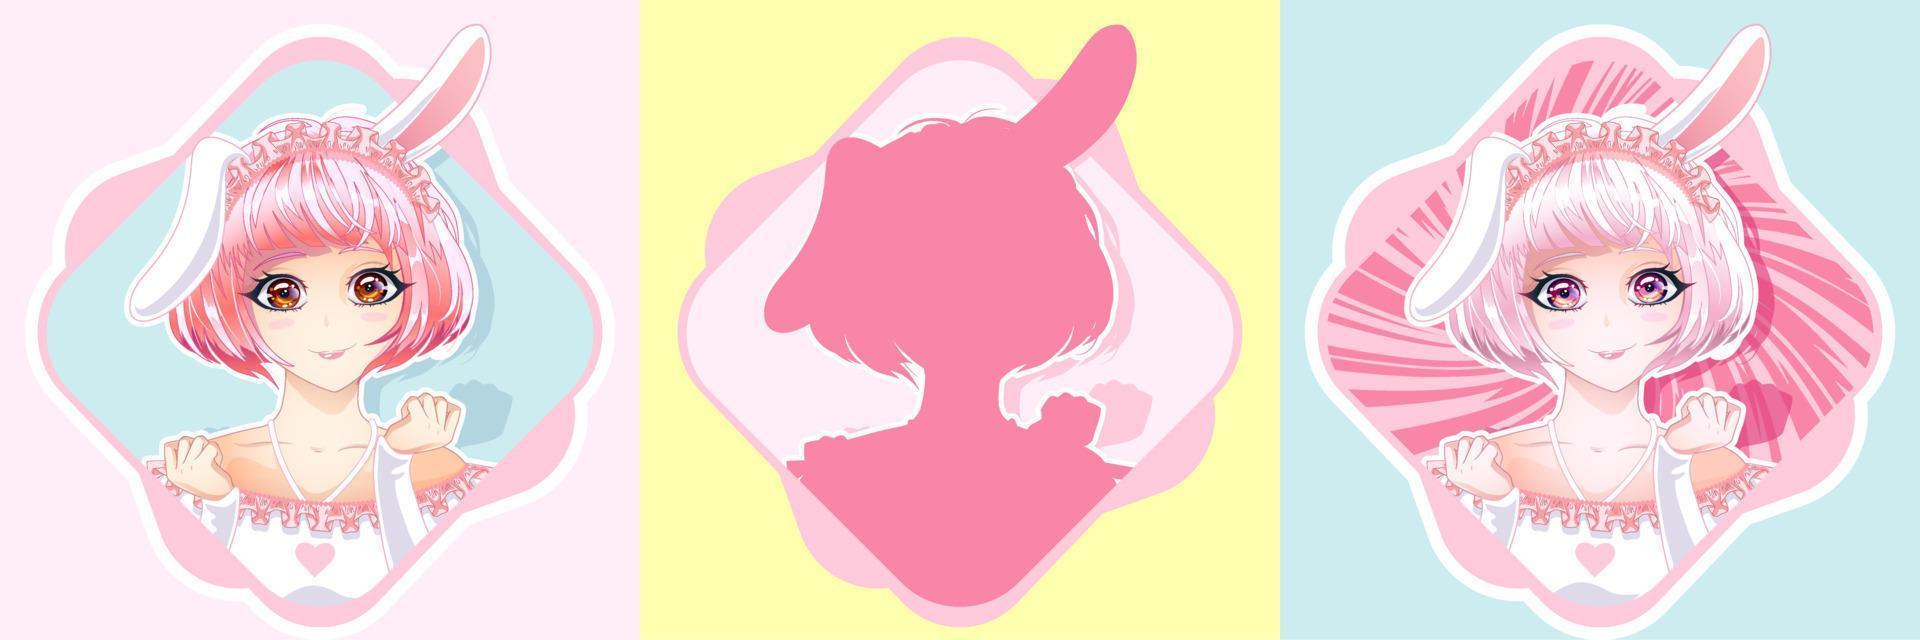 linda niña retrato con rosado pelo y conejito orejas. vector